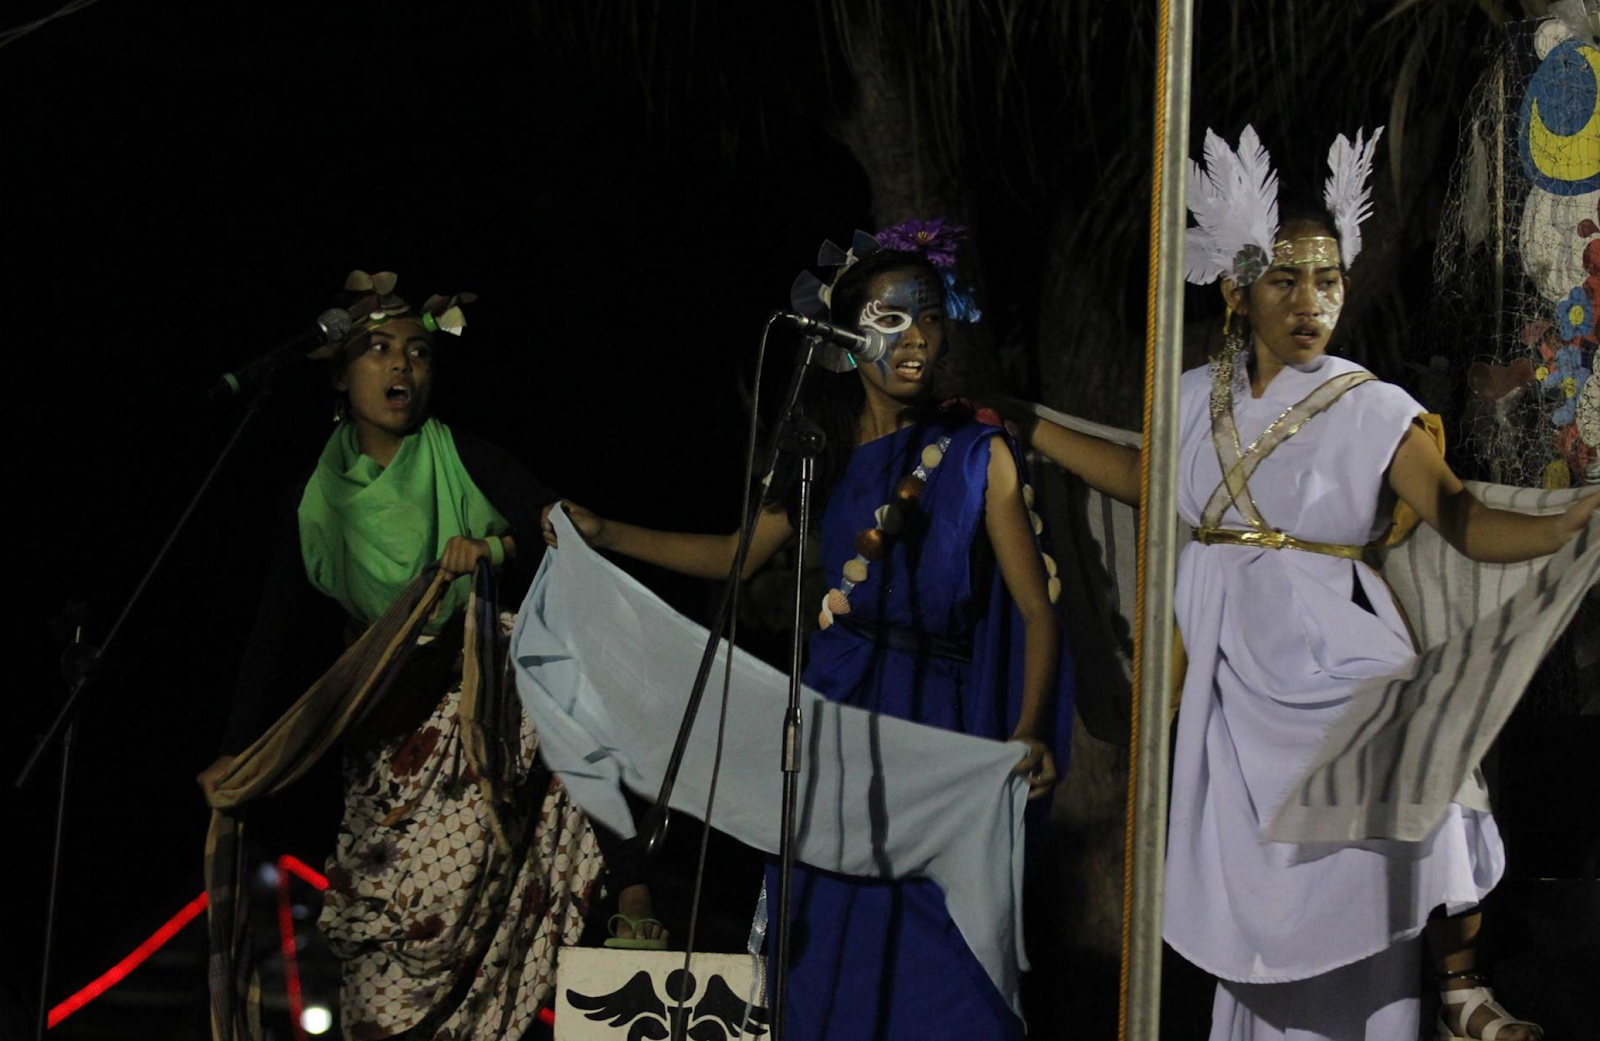 Tapok performing